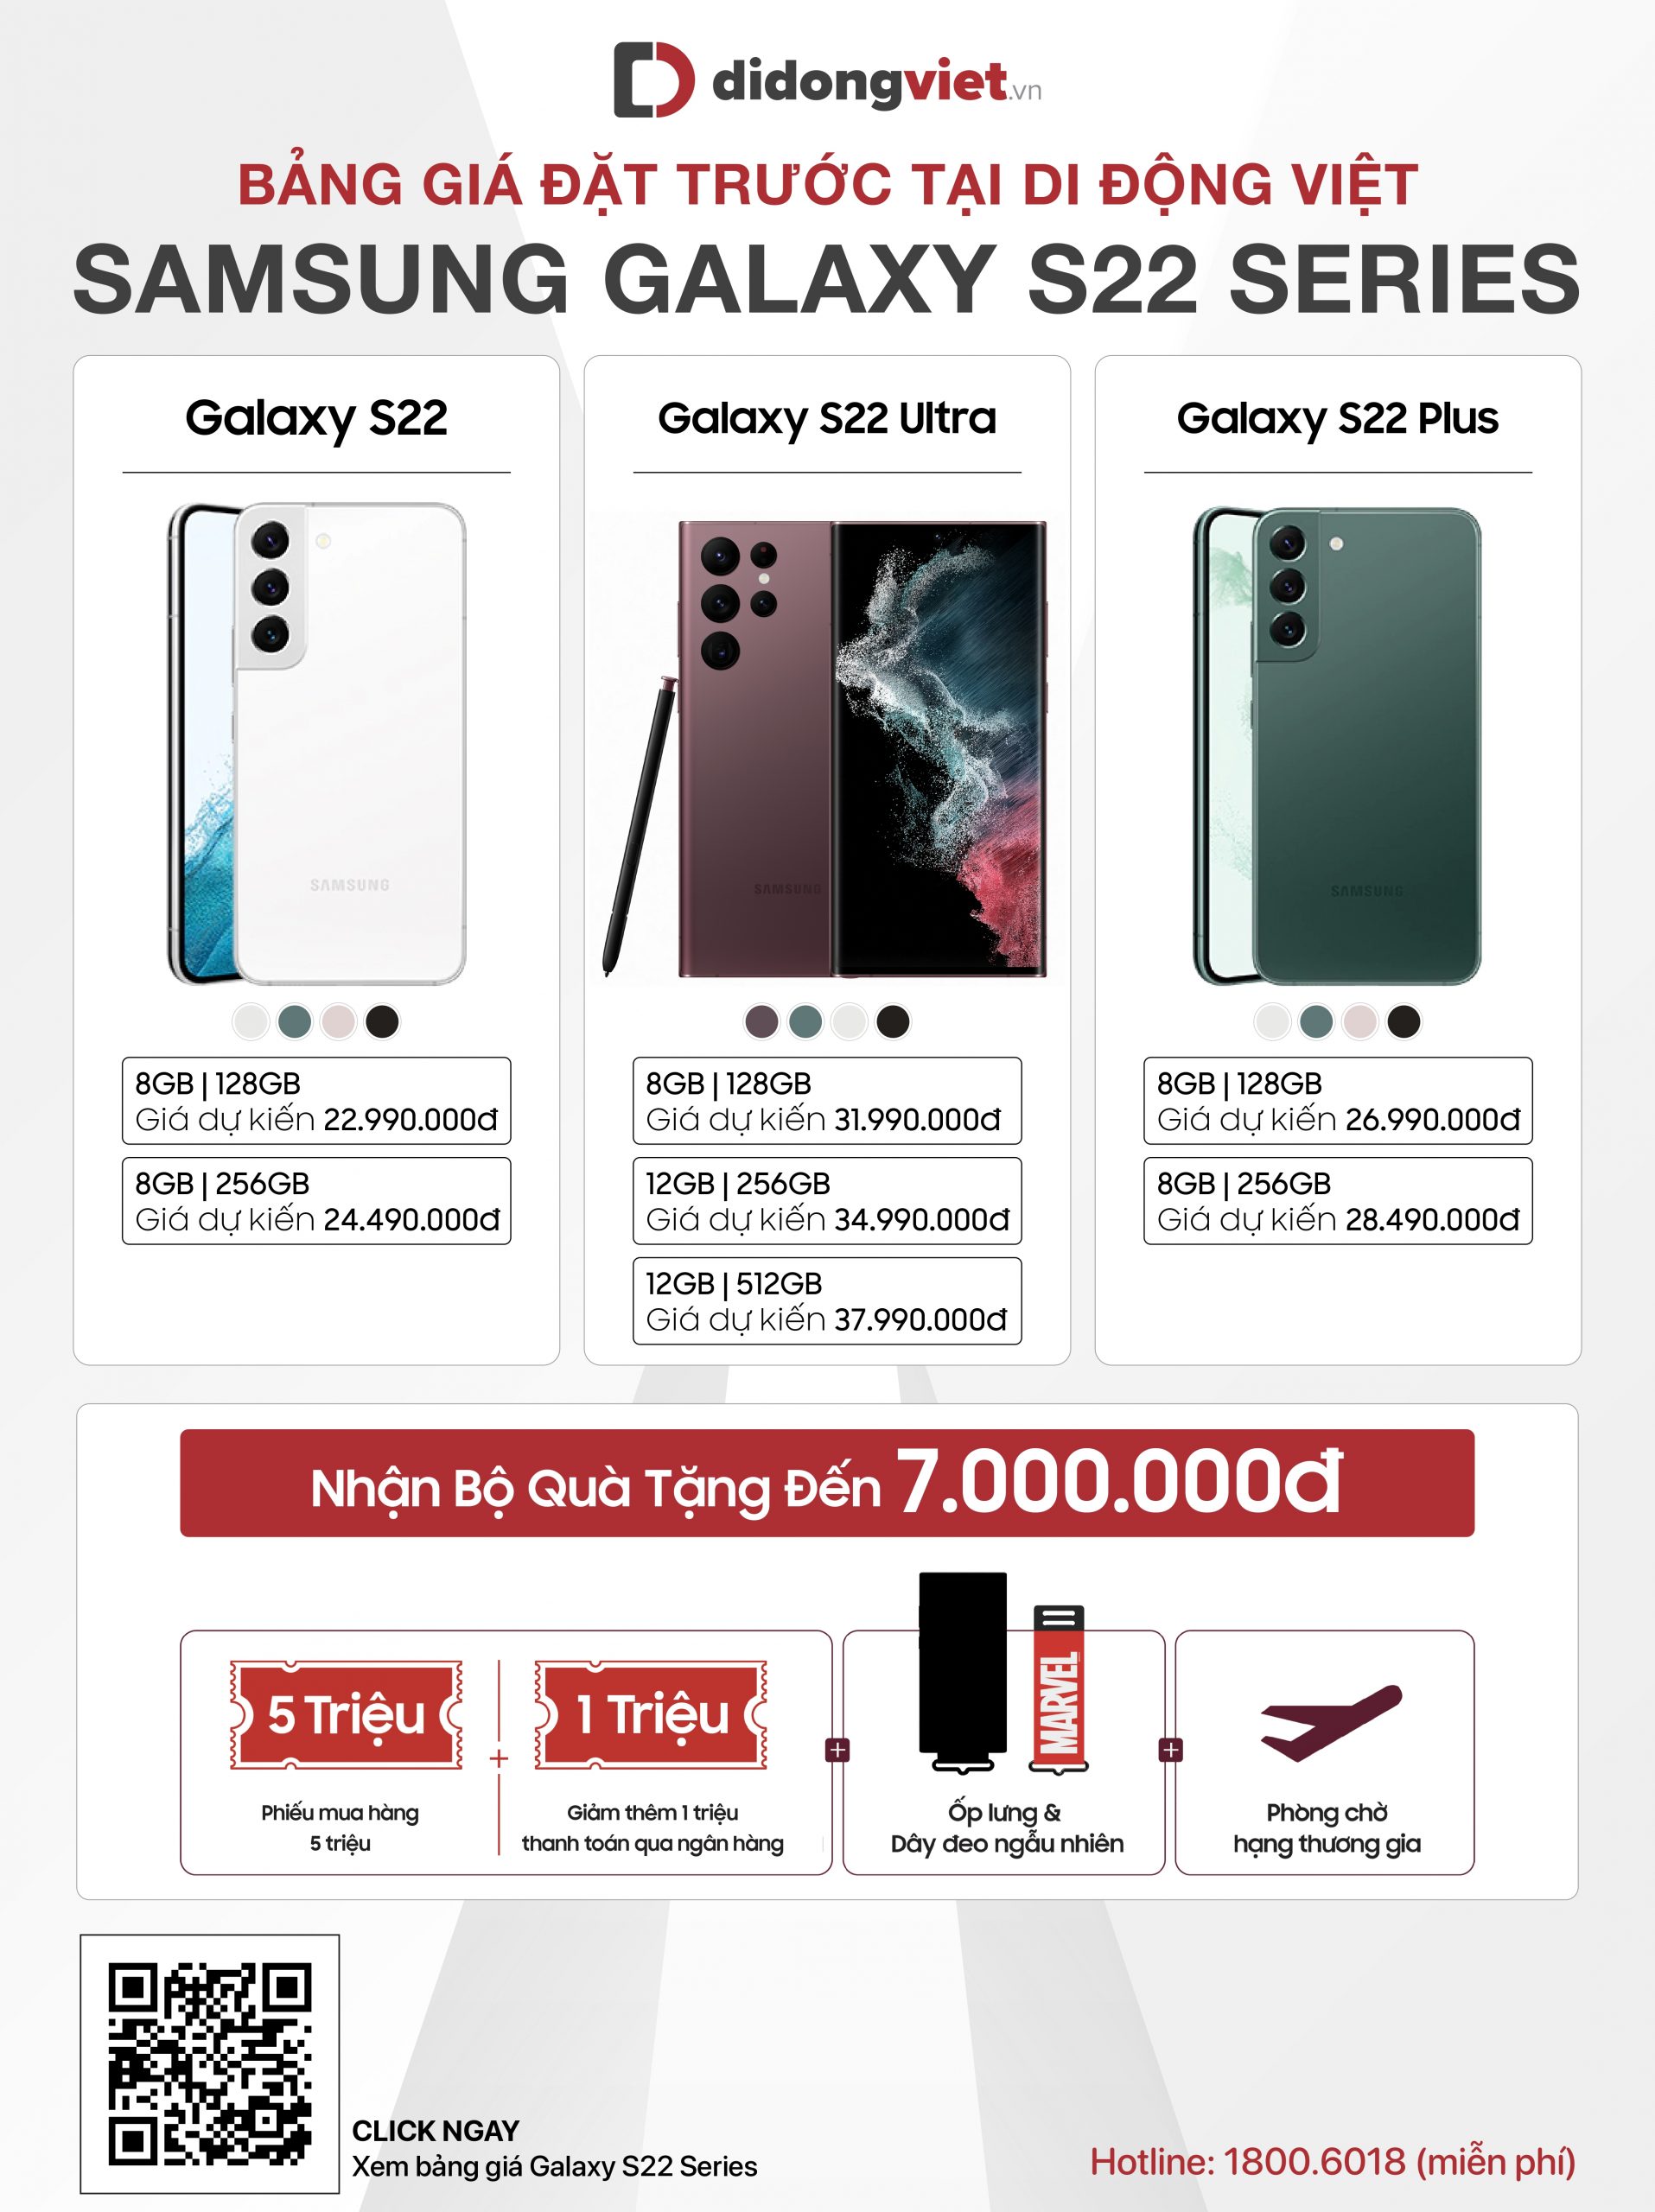 Đặt trước Samsung Galaxy S22 series nhận bộ quà khủng lên đến 7 triệu đồng tại Di Động Việt